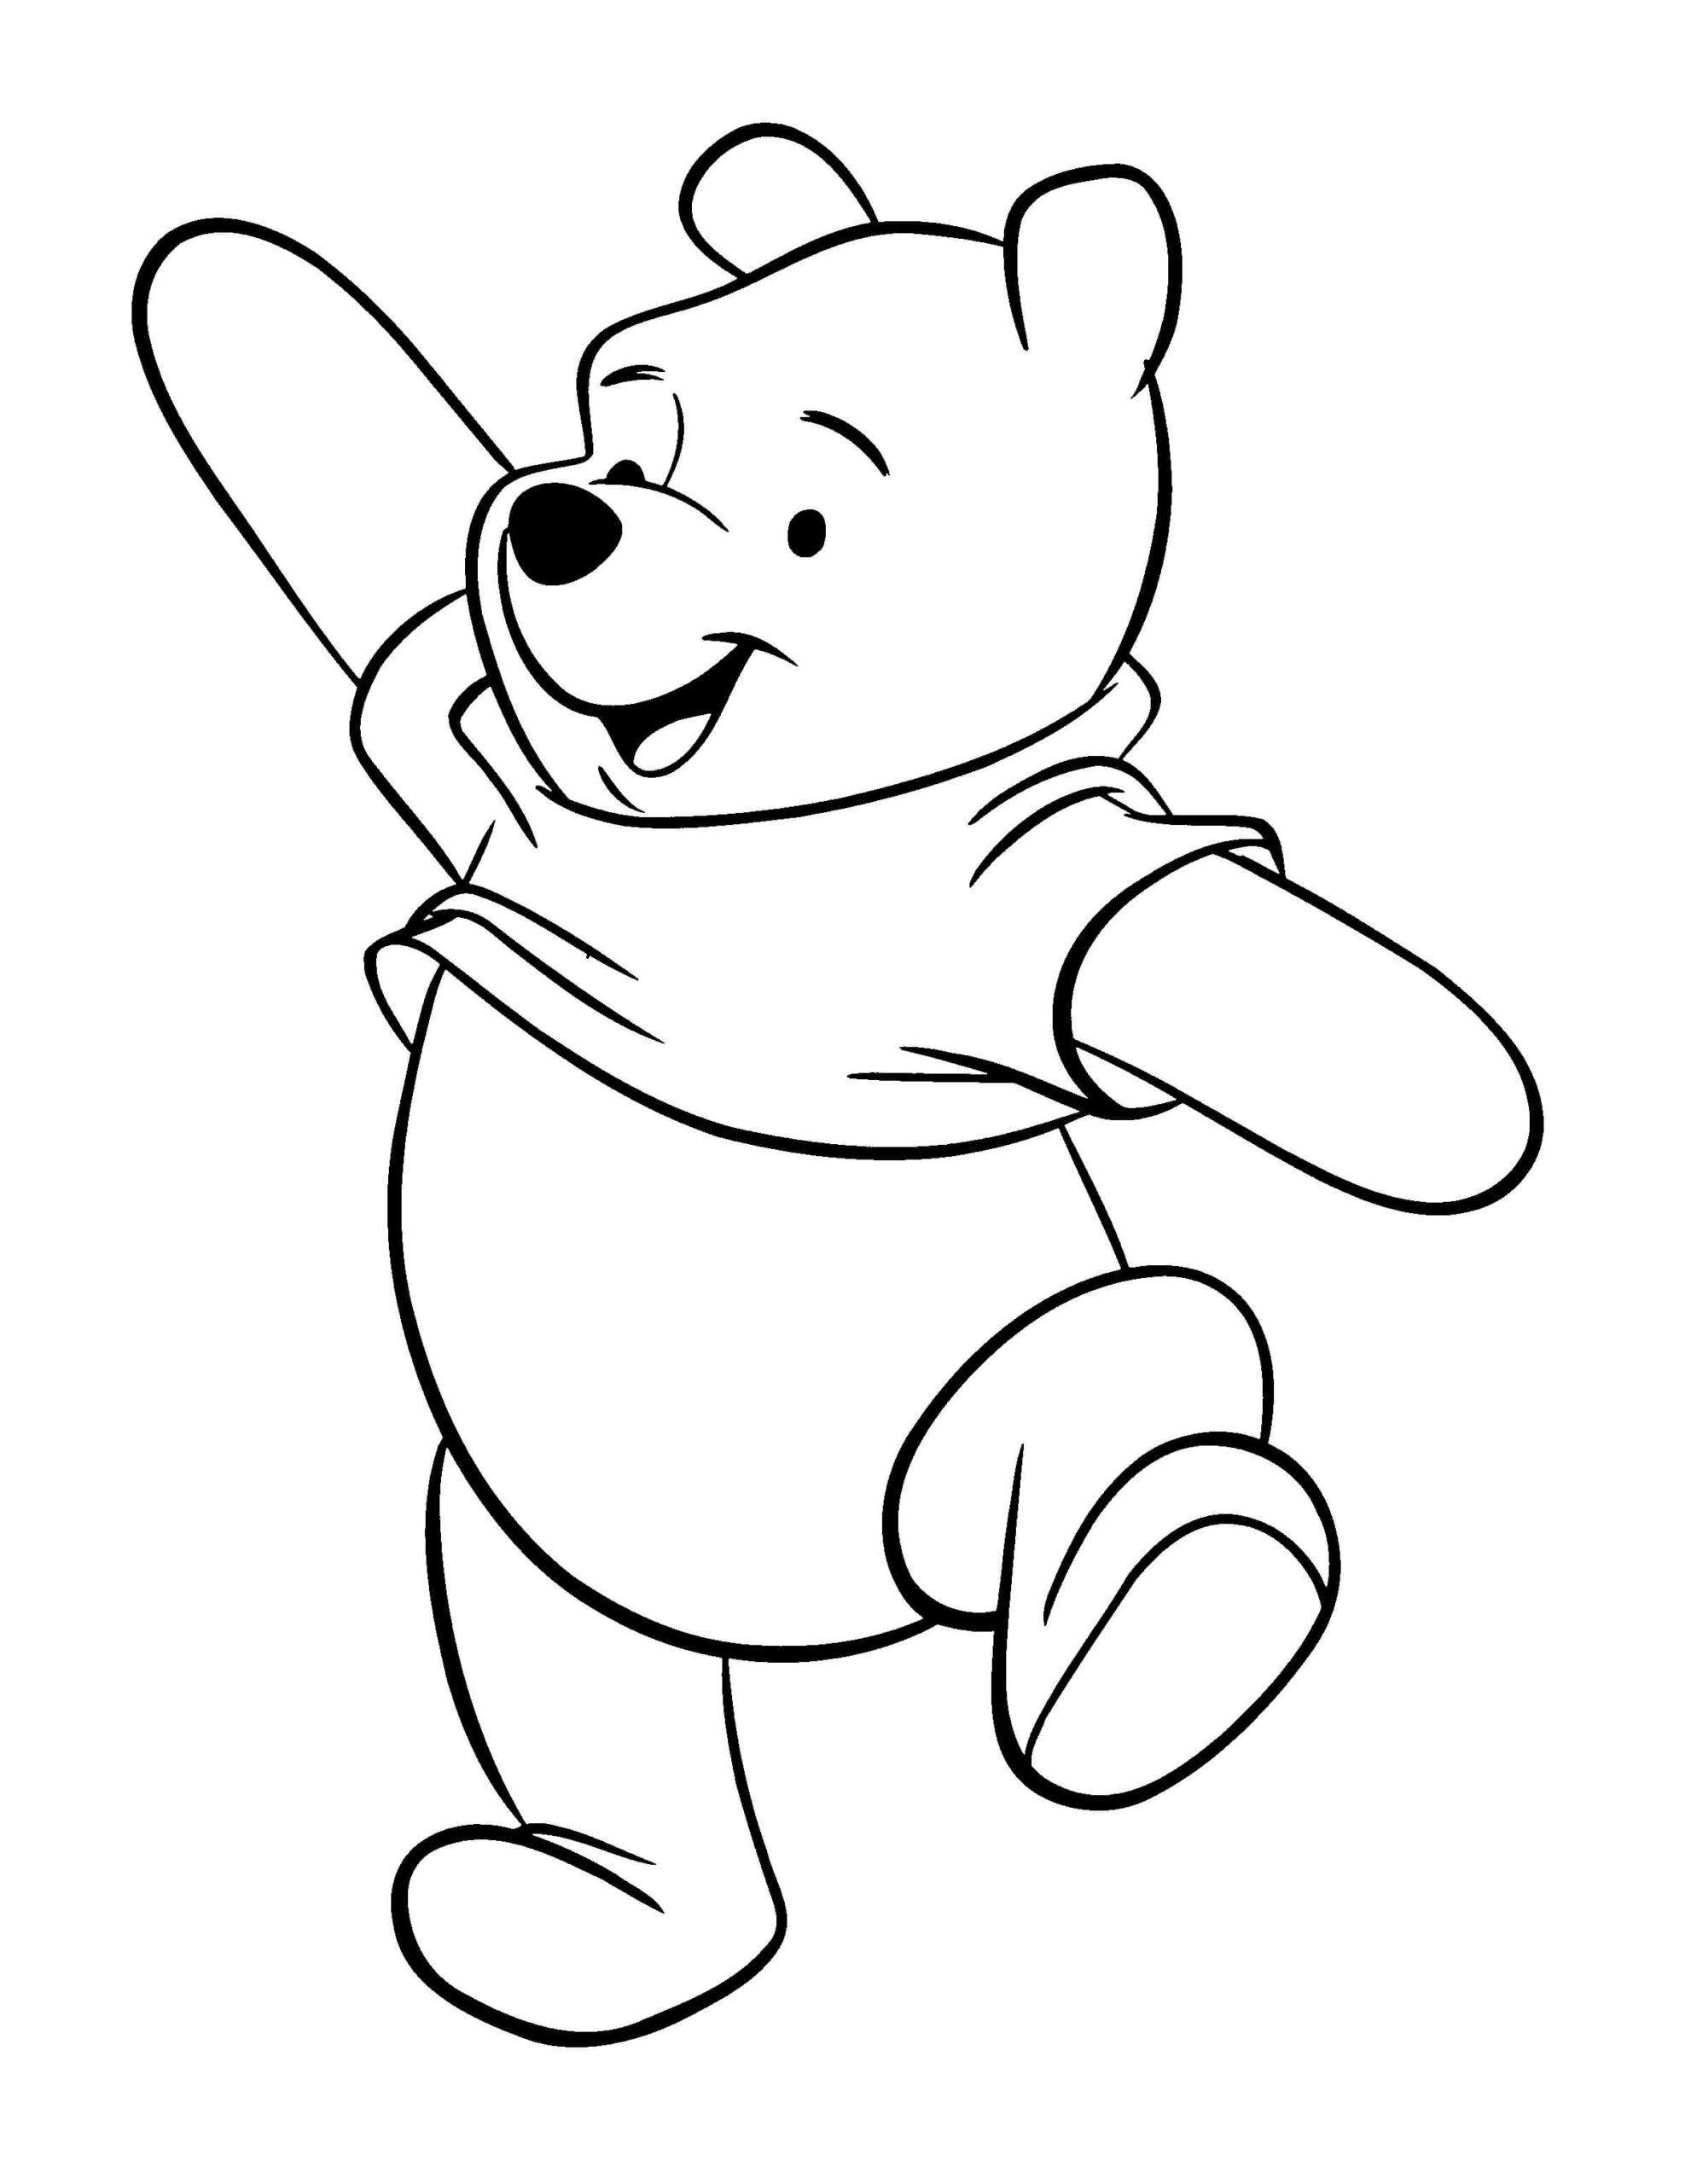 Dibujos de Divertido Winnie de Pooh para colorear